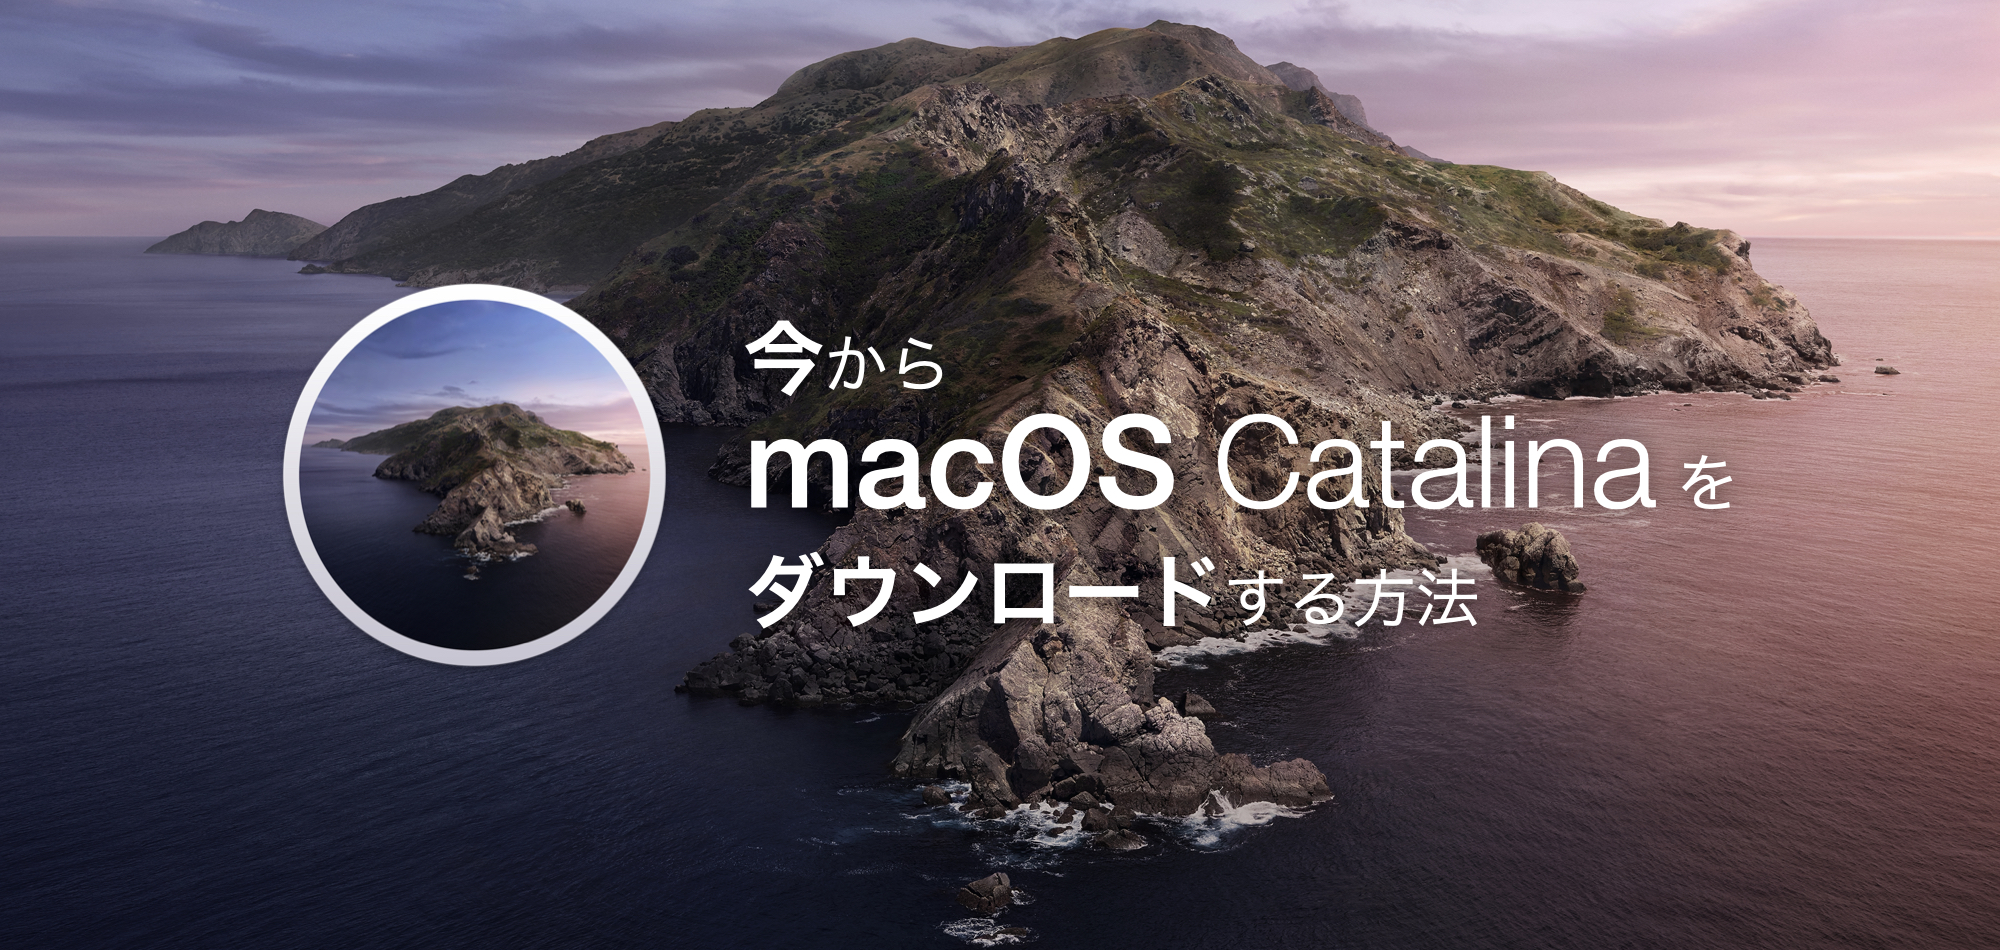 Apple 公式の方法】今から macOS Catalina をダウンロードする方法